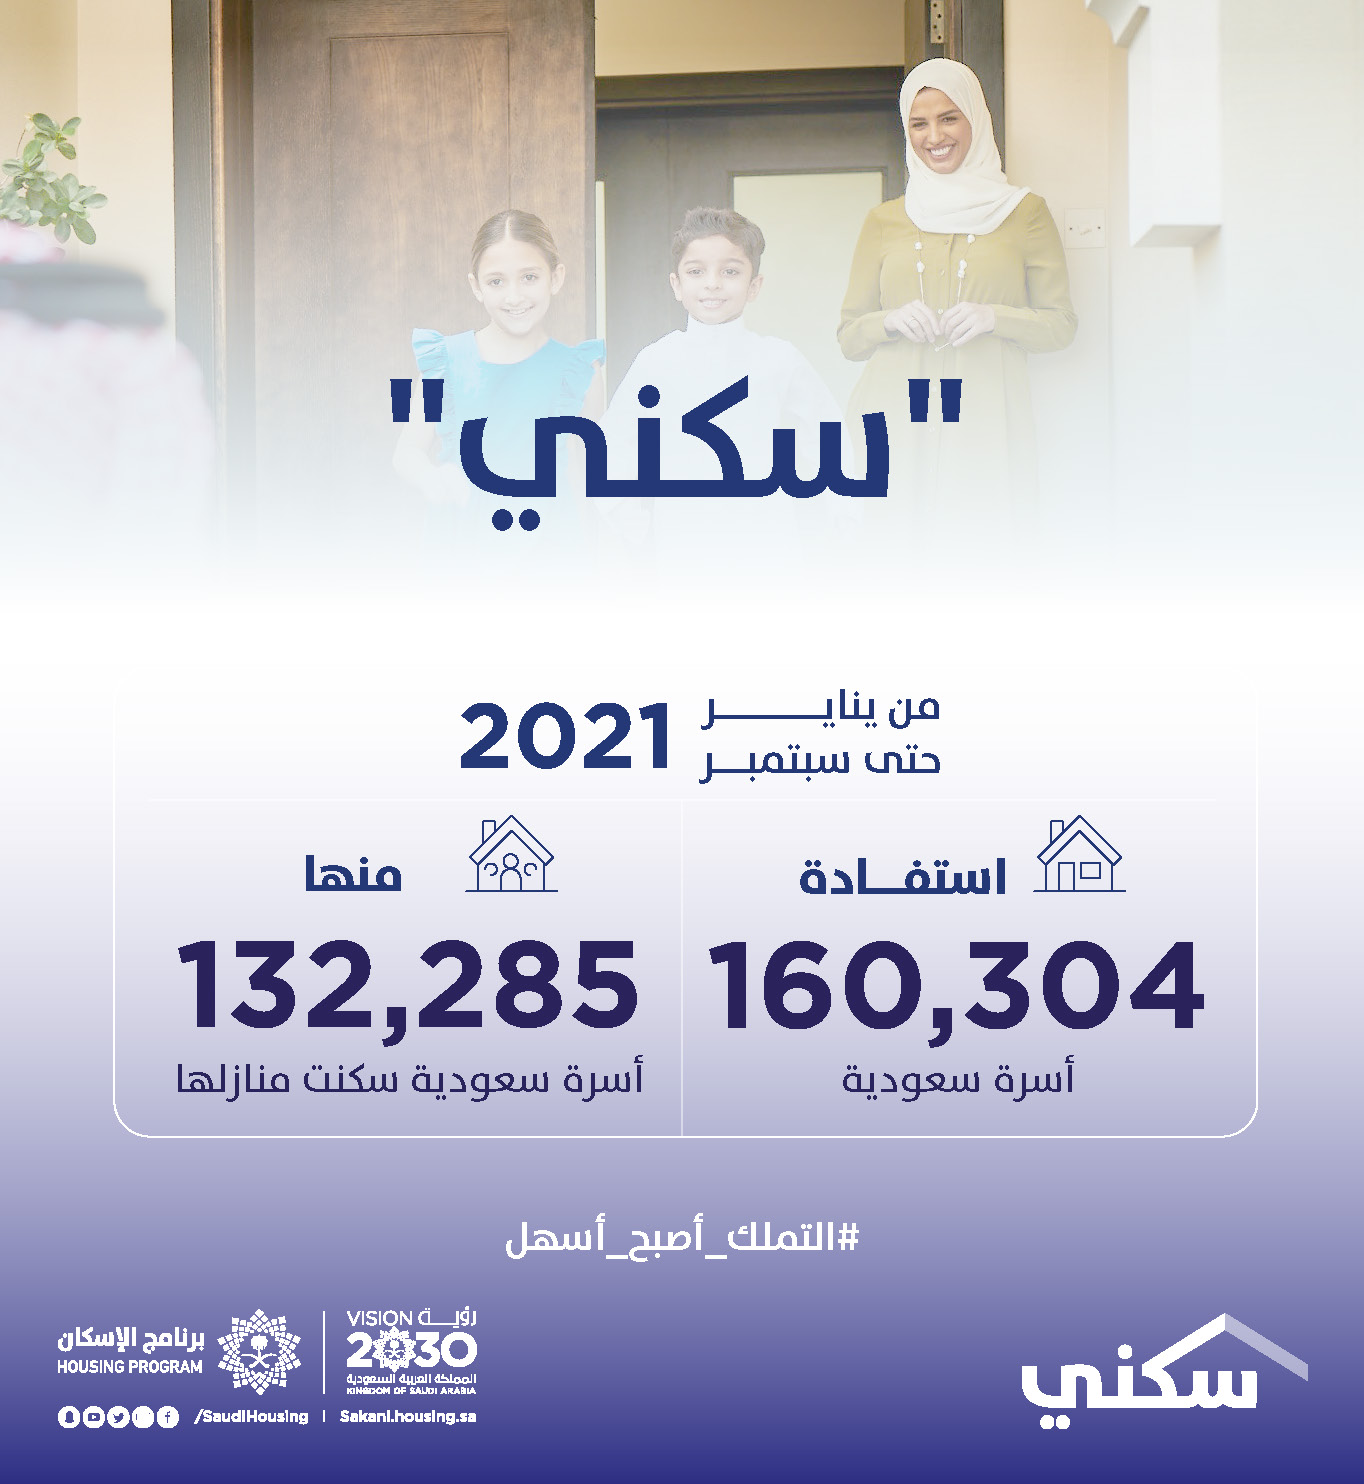 برنامج "سكني" يُعلن استفادة 160 ألف أسرة حتى سبتمبر 2021